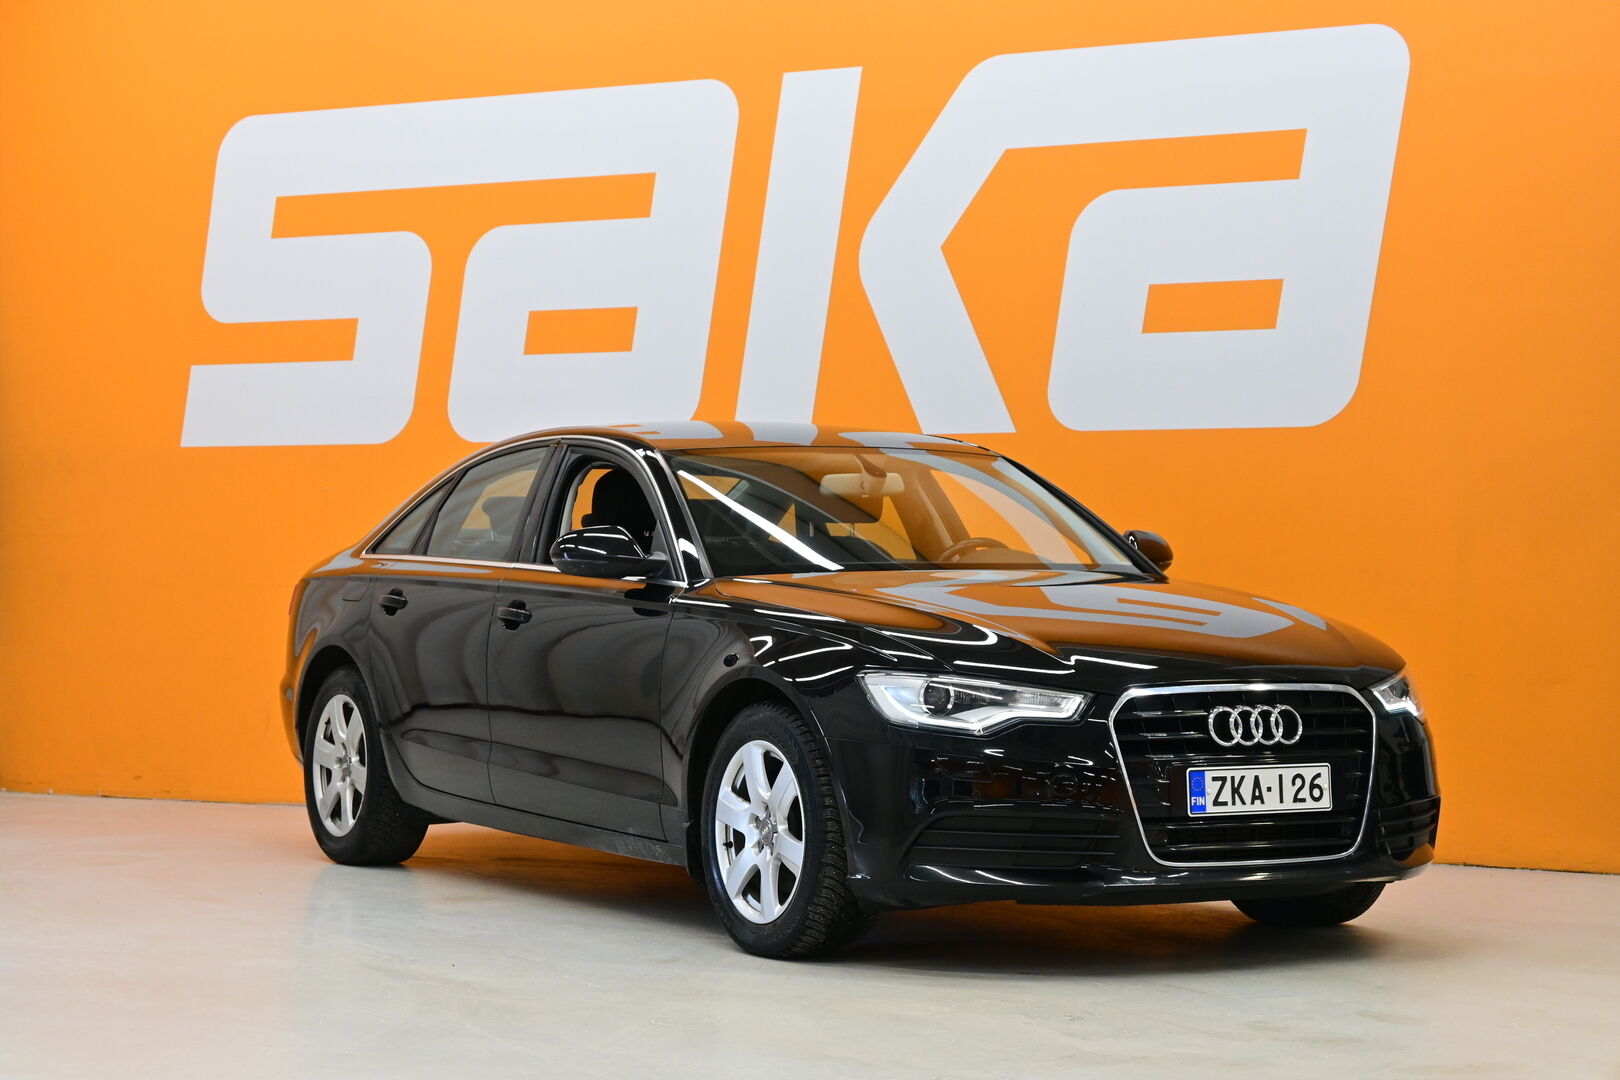 Musta Sedan, Audi A6 – ZKA-126